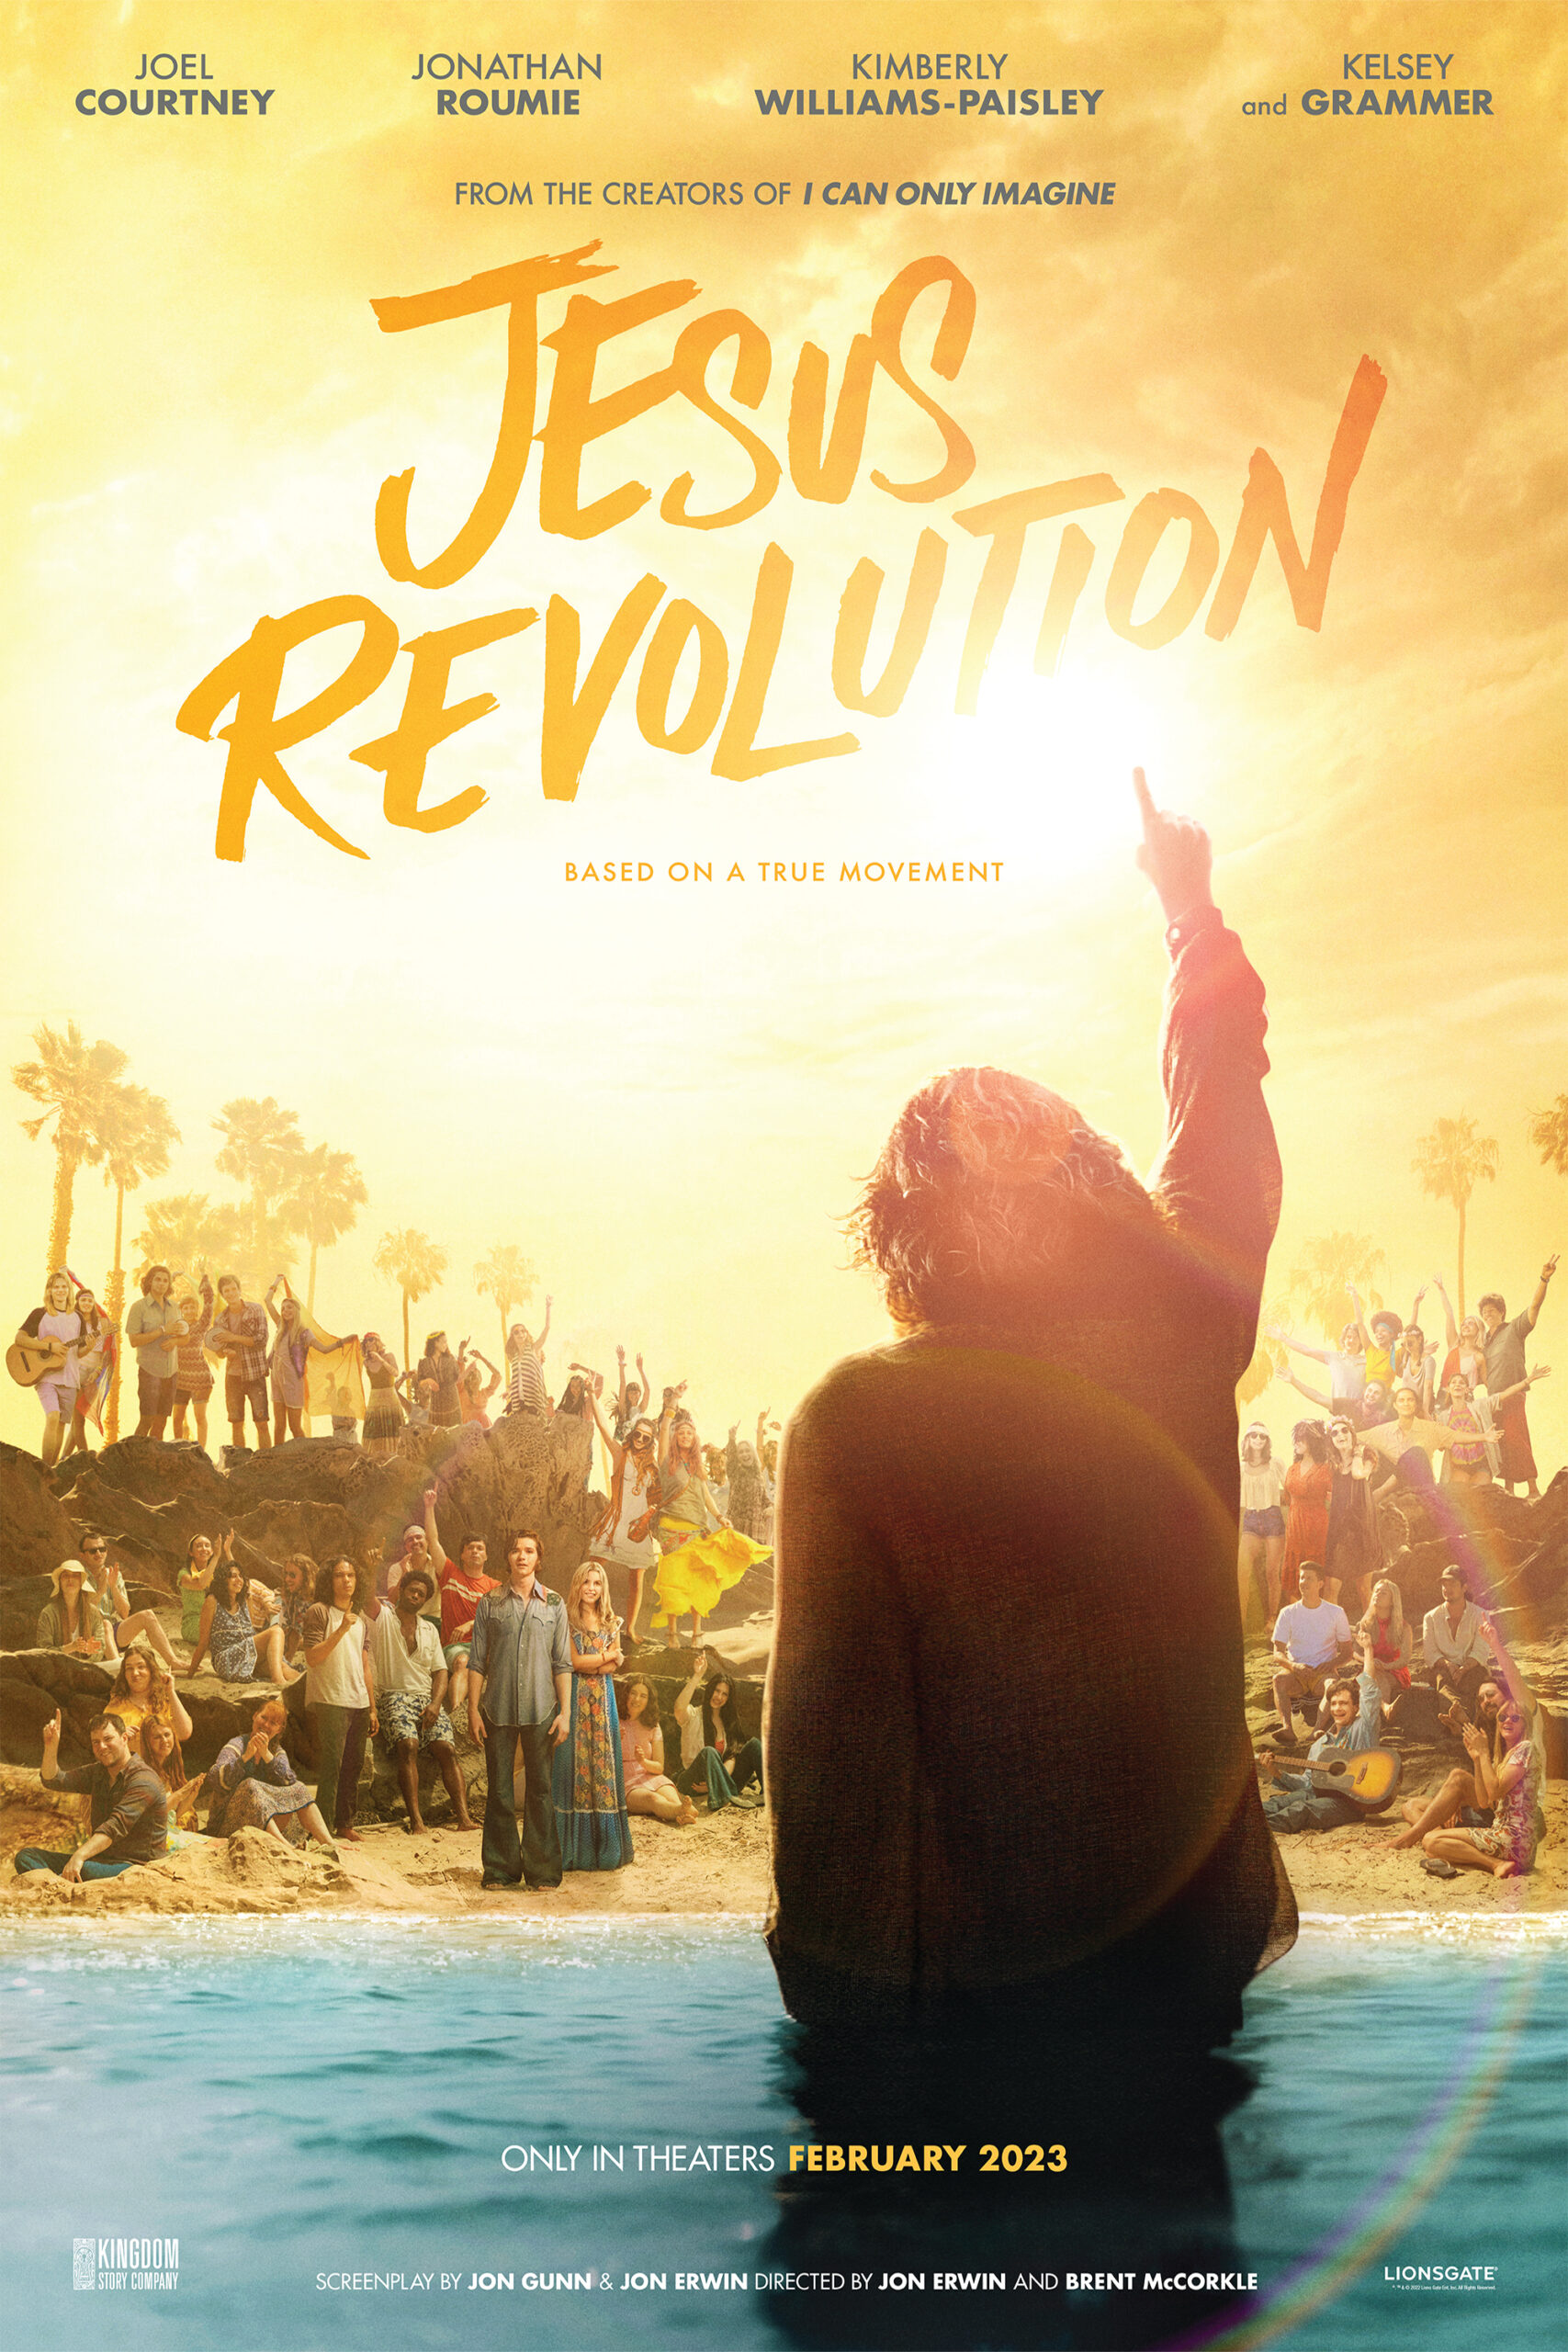 ดูหนังออนไลน์ฟรี หนังใหม่ล่าสุด  JESUS REVOLUTION (2023)